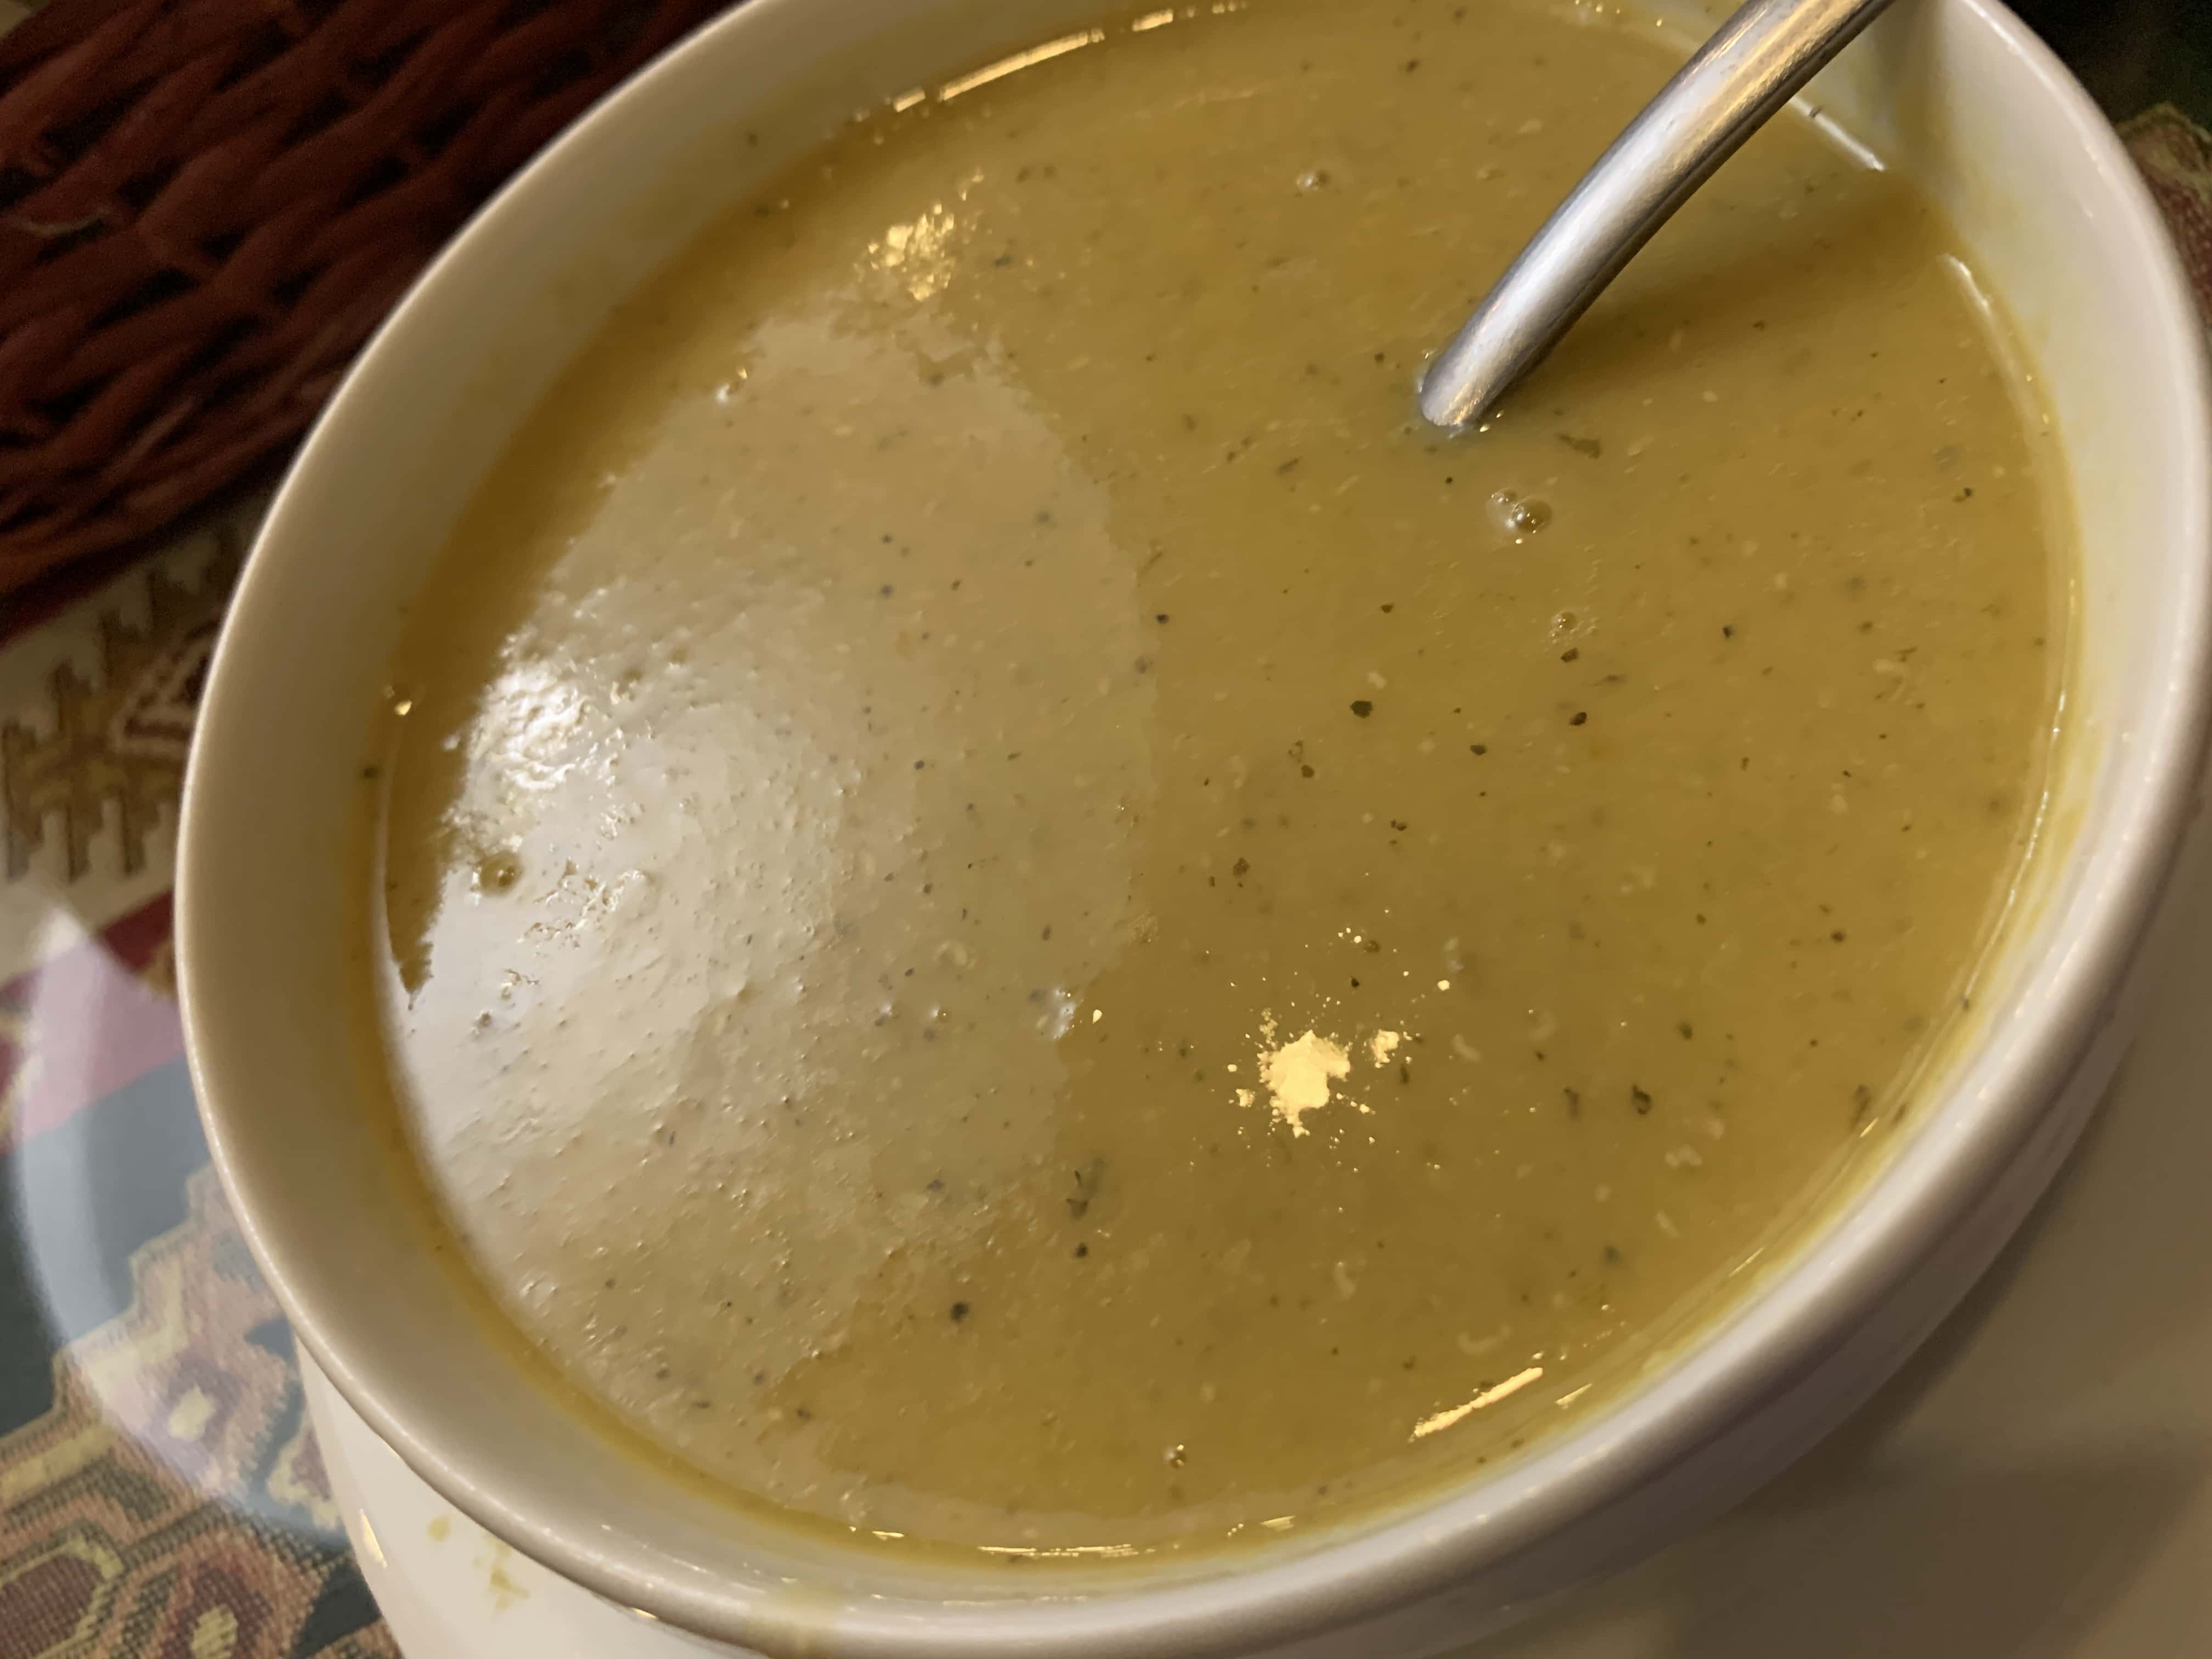 Merch soup